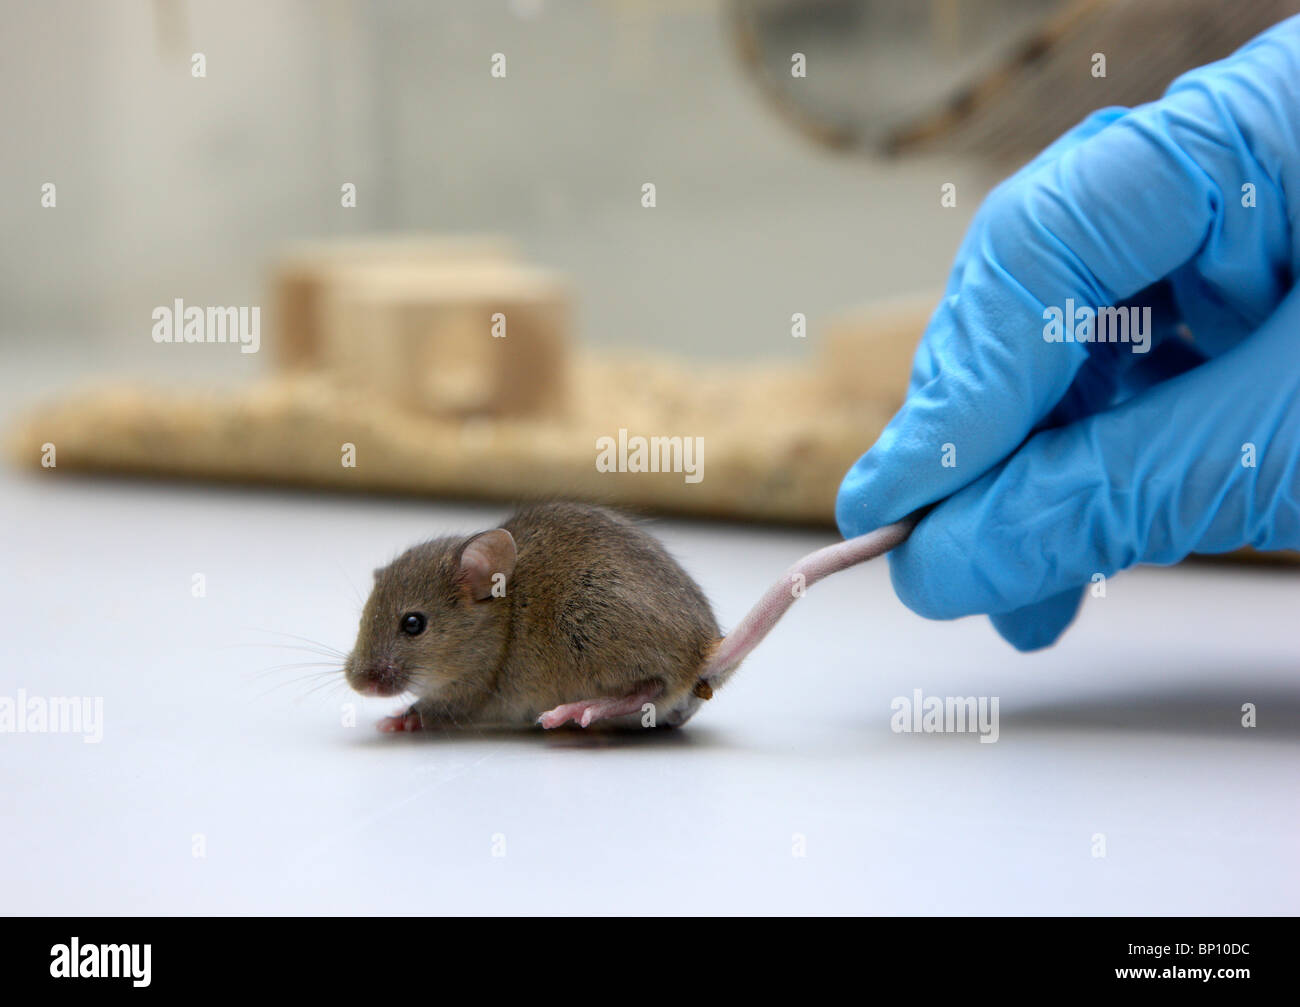 Laboratorio per le biotecnologie. Mouse per esperimento sugli animali. DNA, la ricerca sul cancro. Foto Stock